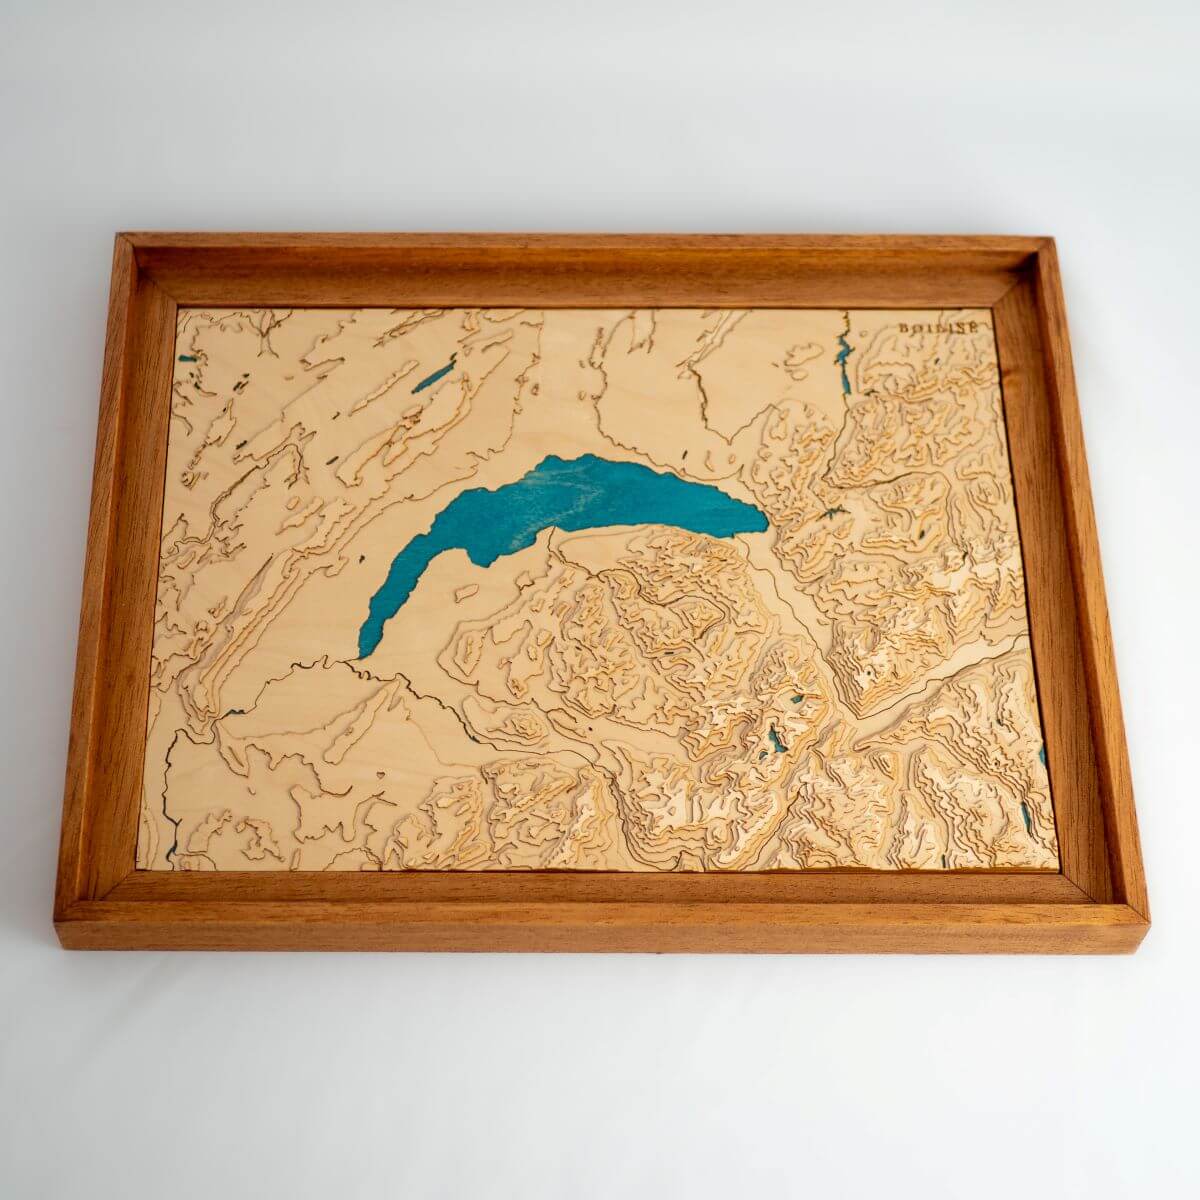 Déco naturelle avec la carte du lac Léman fabriquée en France de manière artisanale